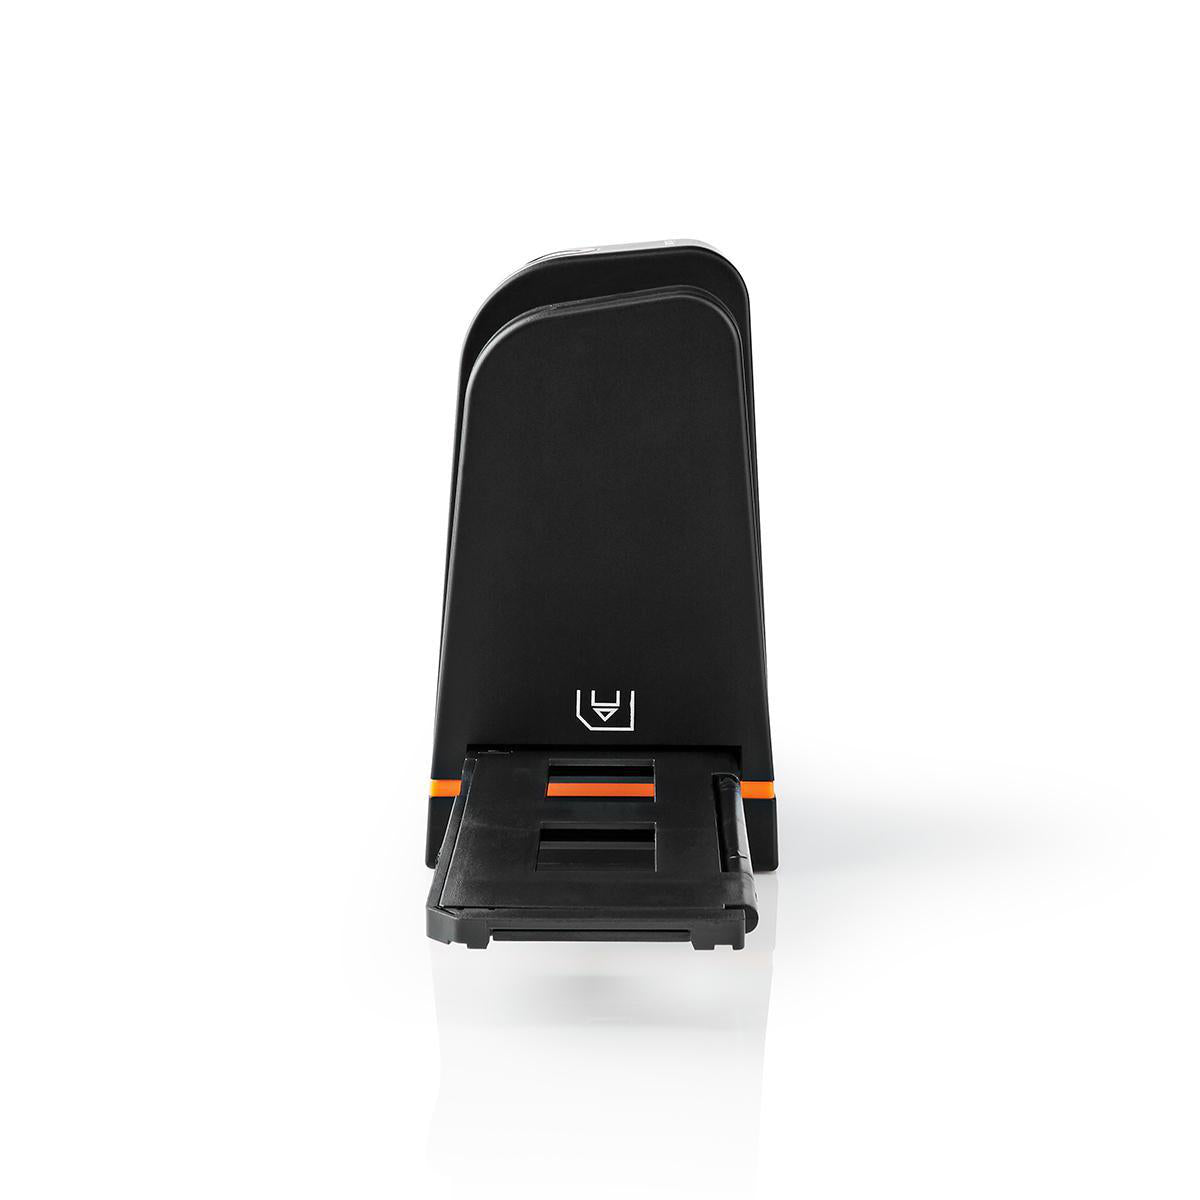 Dia-/Negativscanner | 35.0 mm | 10 MPixel | Scanauflösung: 1800 / 3600 dpi | Scan-Zeit: 2 s | Stromversorgung über USB | Sotware enthalten | Schwarz